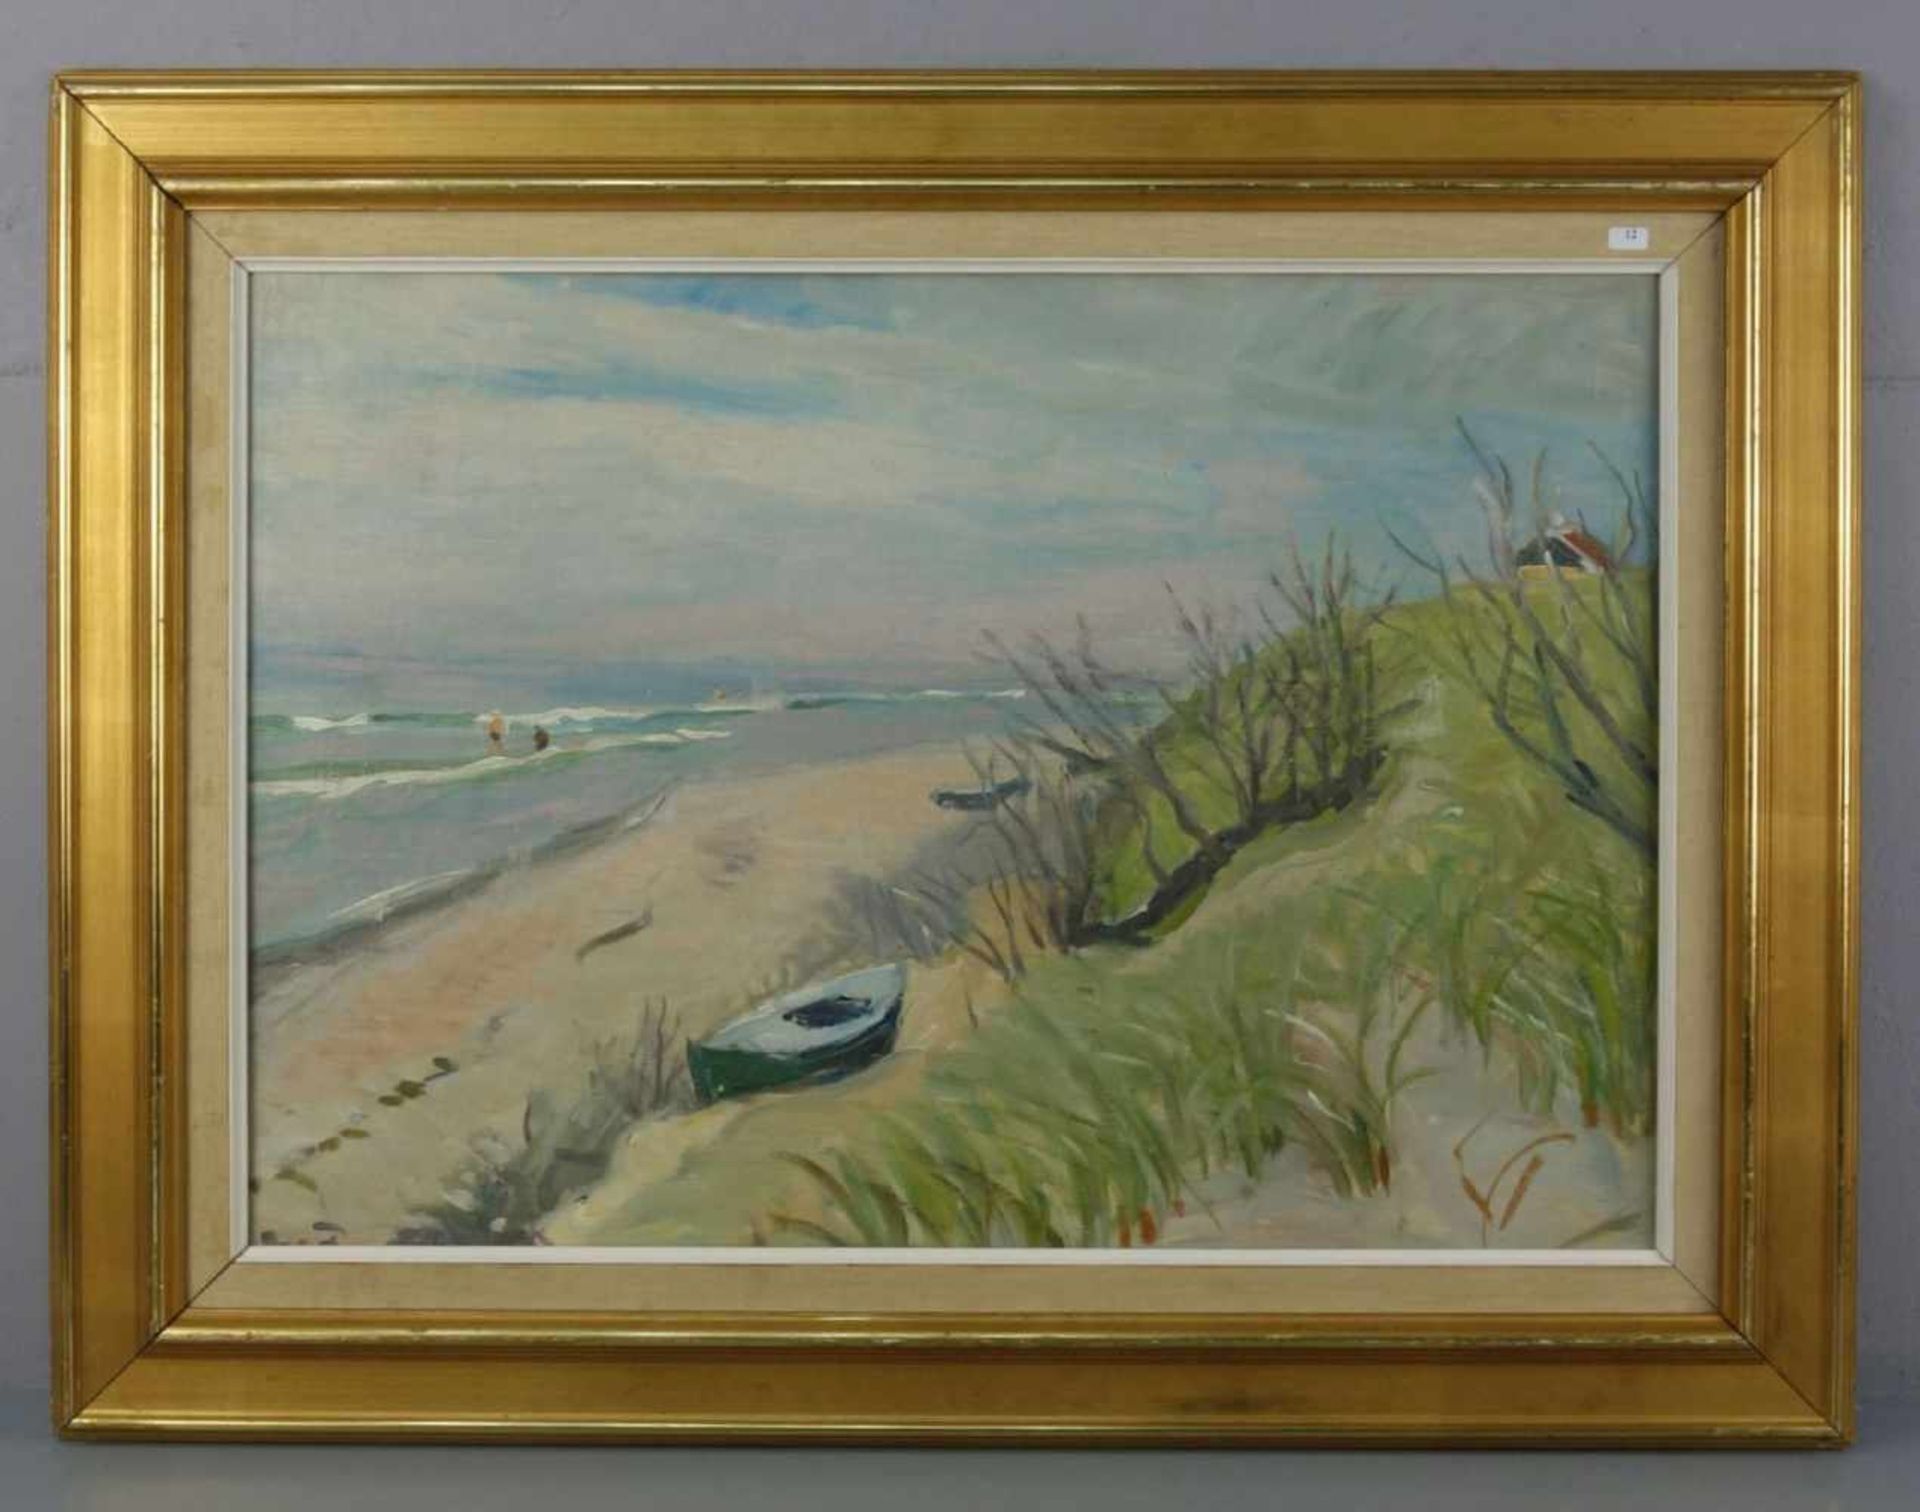 BERNHARD-FREDERIKSEN, AAGE (Aarhus 1883-1963 Skagen, dänischer Maler), Gemälde / painting: "